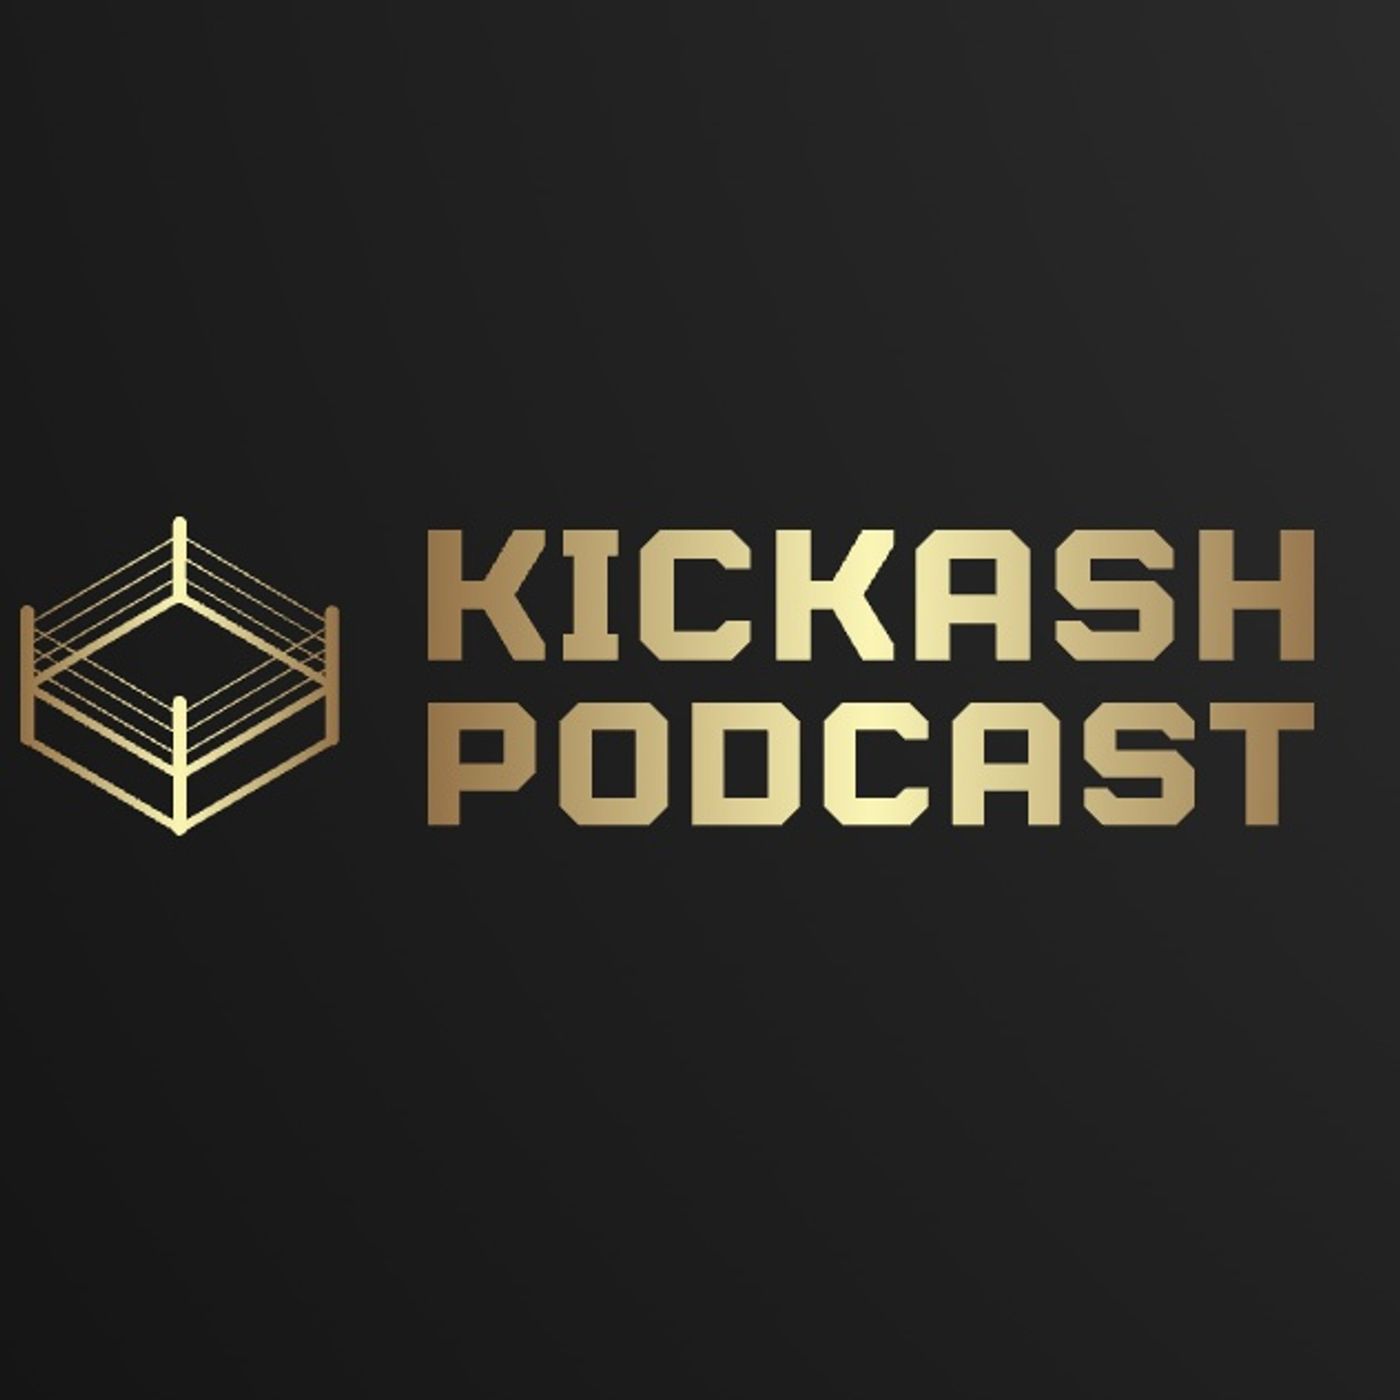 KickAsh Podcast